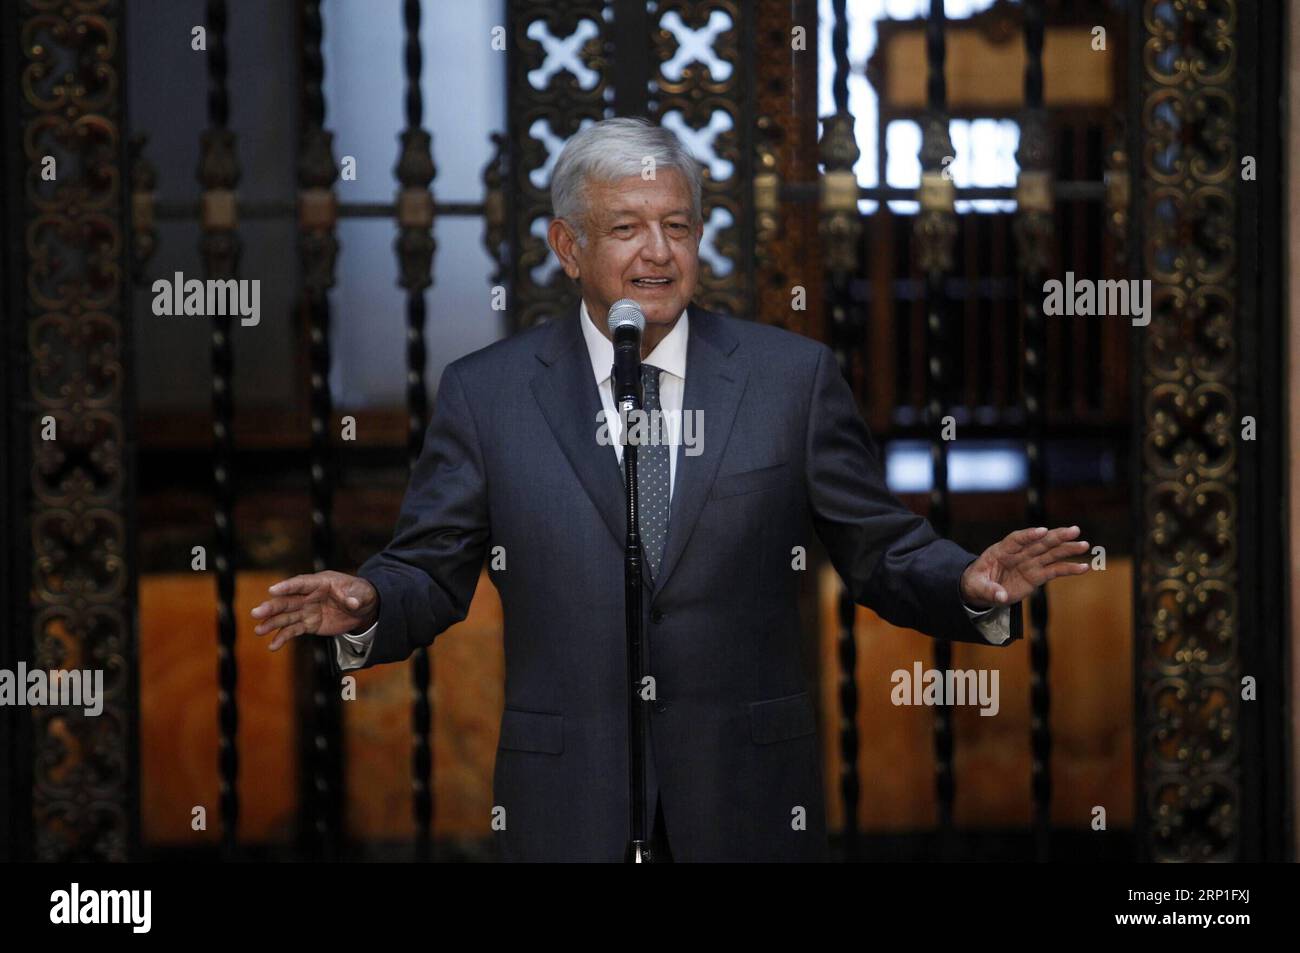 (180704) -- MEXICO, le 4 juillet 2018 -- le président élu du Mexique, Andres Manuel Lopez Obrador, prononce un discours après sa rencontre avec le président mexicain Enrique Pena Nieto, à Mexico, capitale du Mexique, le 3 juillet 2018. Le président élu du Mexique, Andres Manuel Lopez Obrador, a déclaré mardi qu'il était satisfait de sa rencontre privée avec le président Enrique Pena Nieto. (Da) (rtg) (gj) MEXICO-MEXICO CITY-LOPEZ OBRADOR FrancisoxCanedo PUBLICATIONxNOTxINxCHN Banque D'Images